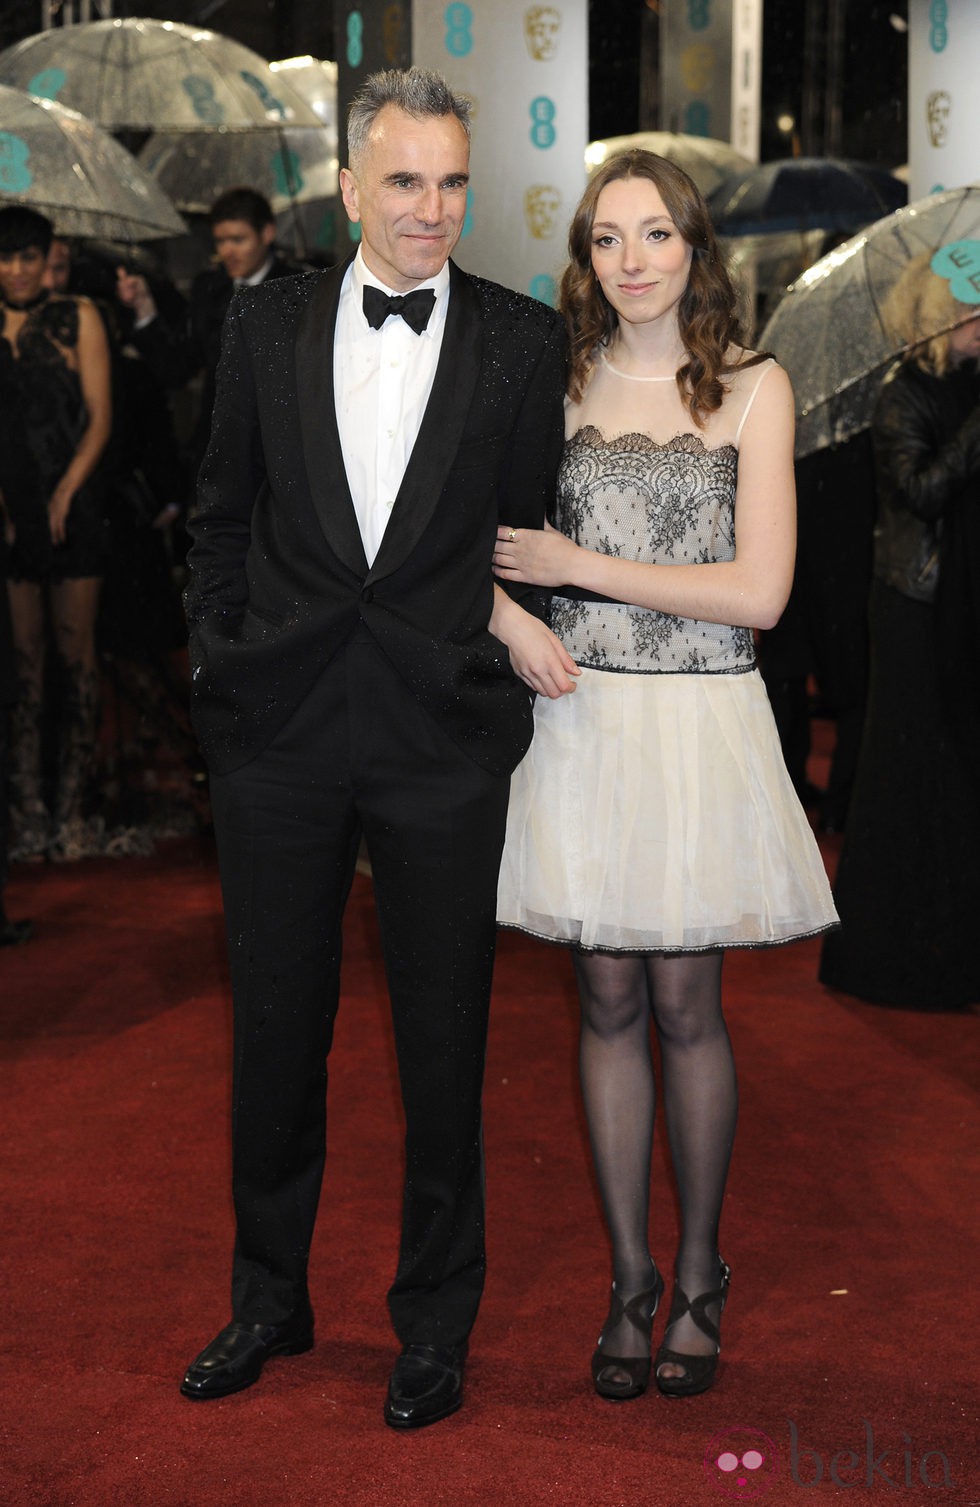 Daniel Day-Lewis en la alfombra roja de los BAFTA 2013